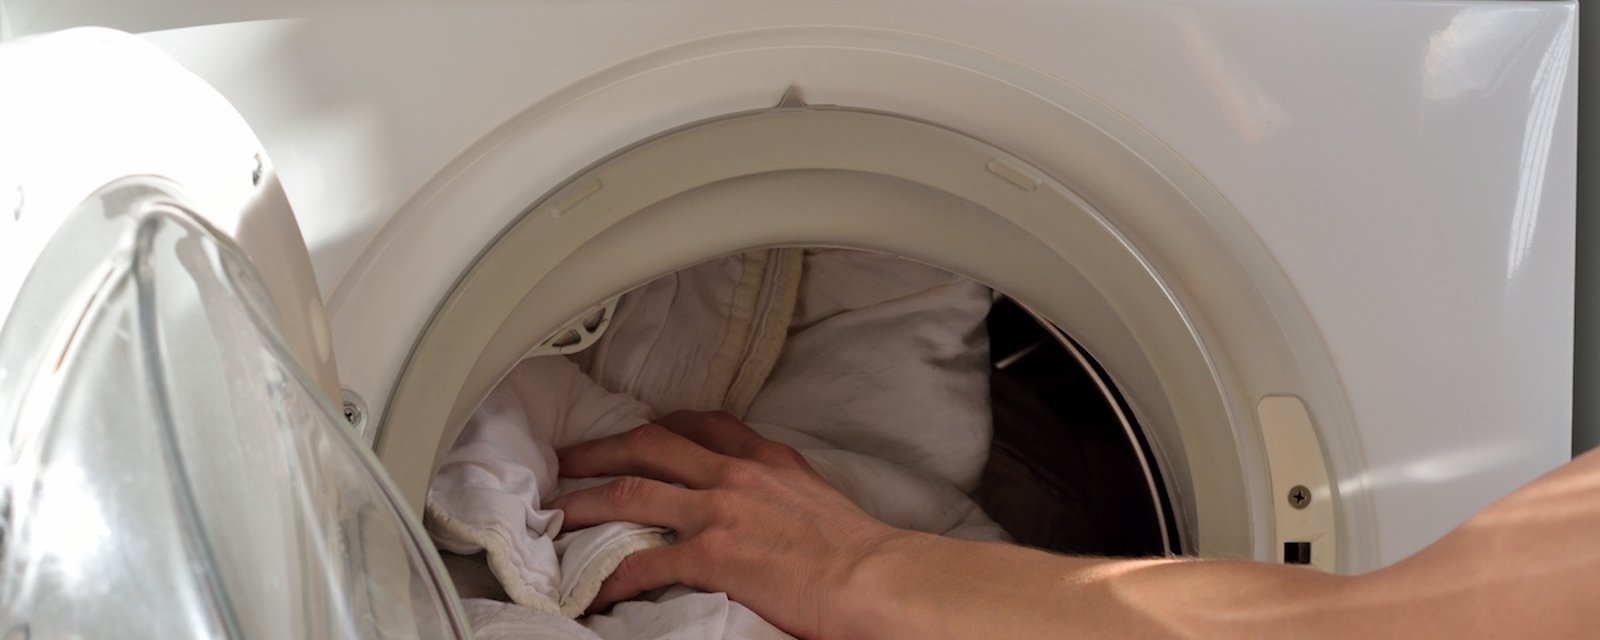 5 secrets sur la machine à laver révélés par des employés de buanderies professionnelles